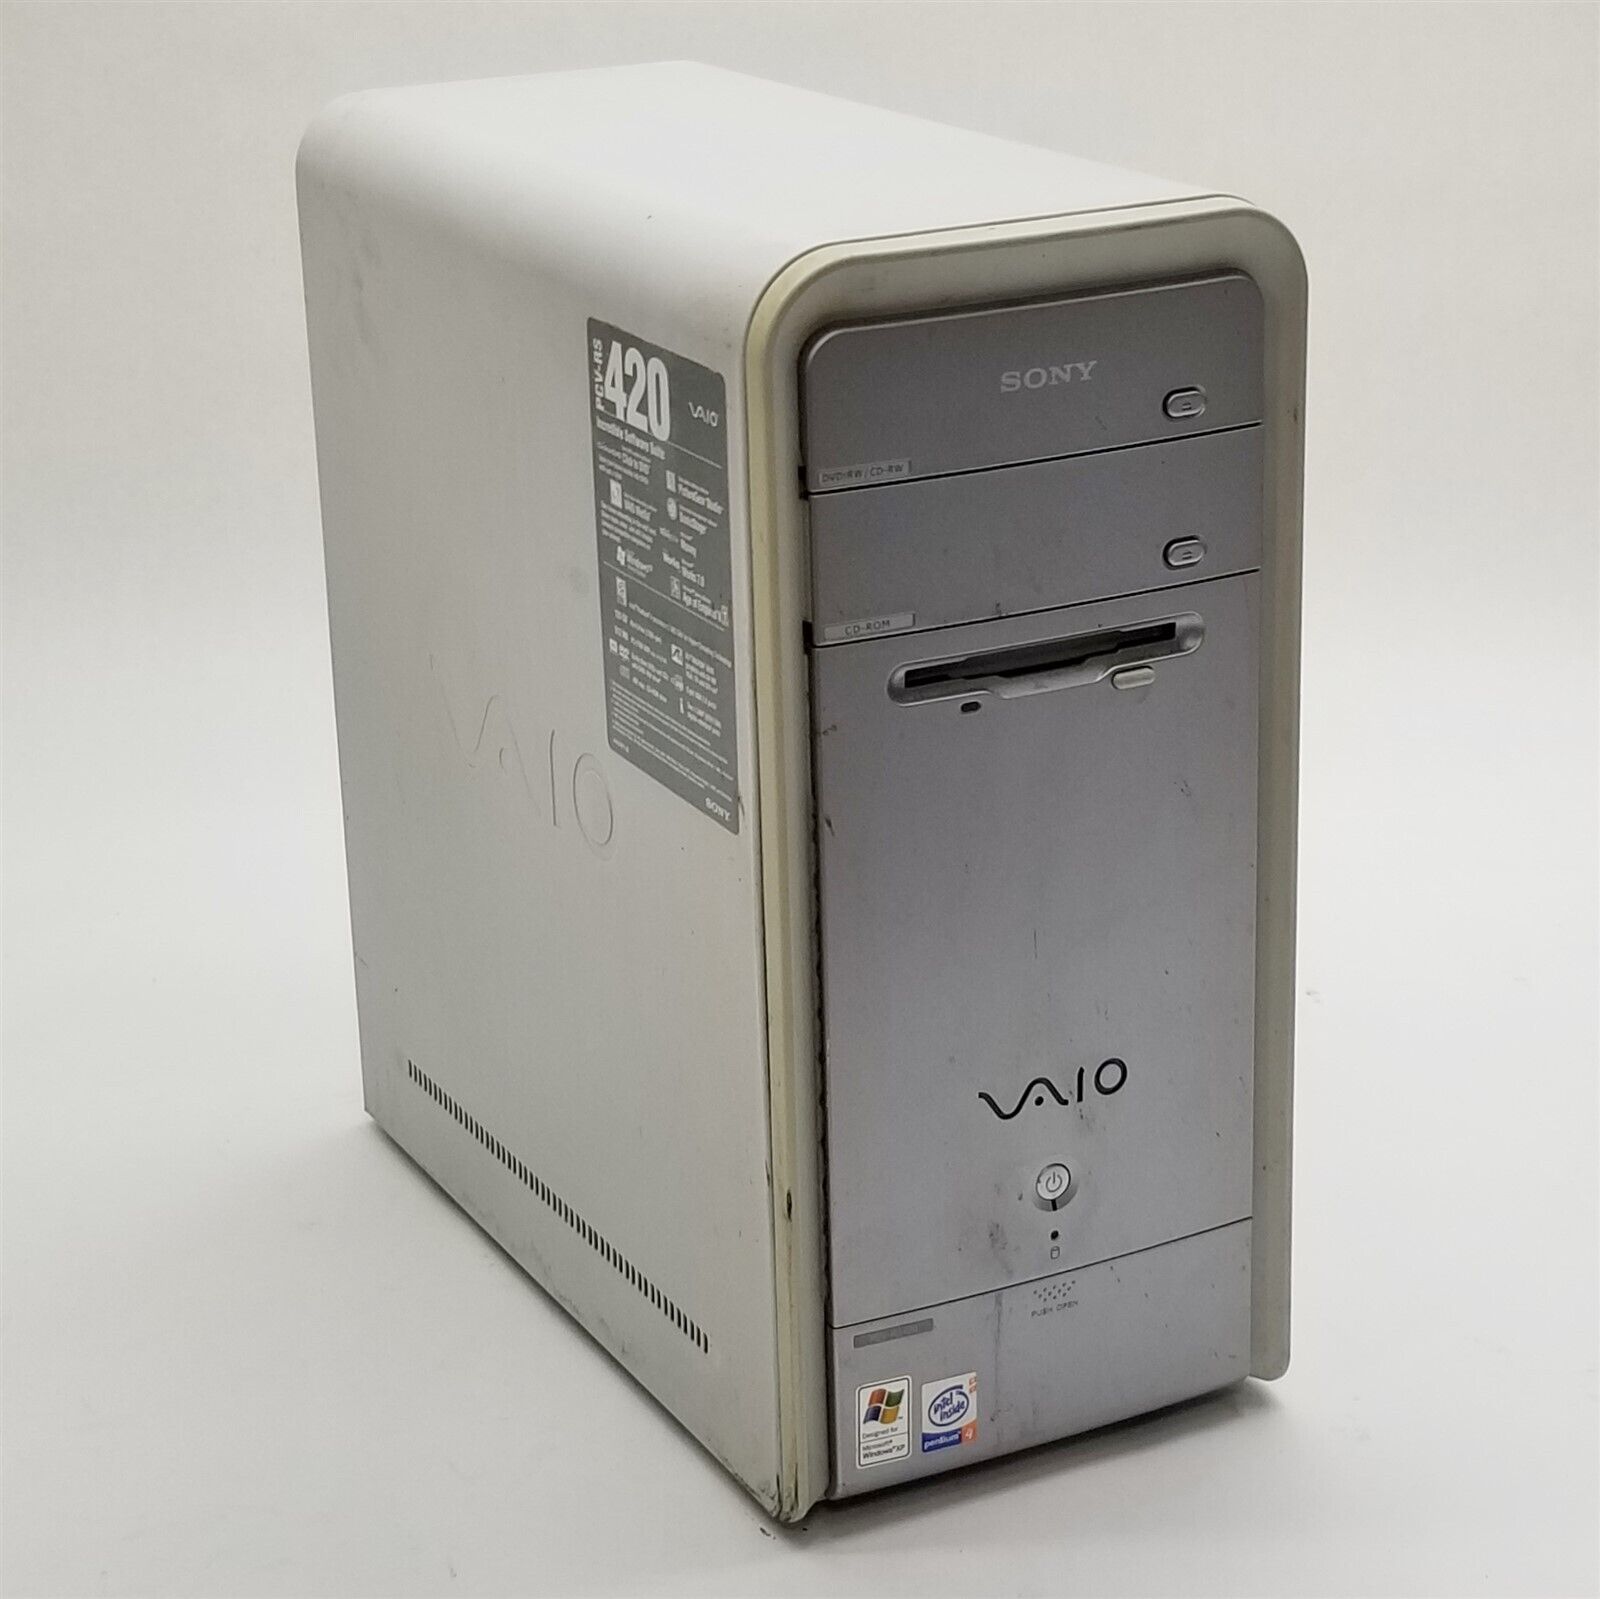 Sony Vaio PCV-RS420 Pentium 4 2.8GHz 2GB RAM DVD/CD-Rom No HDD Radeon 9550 PC